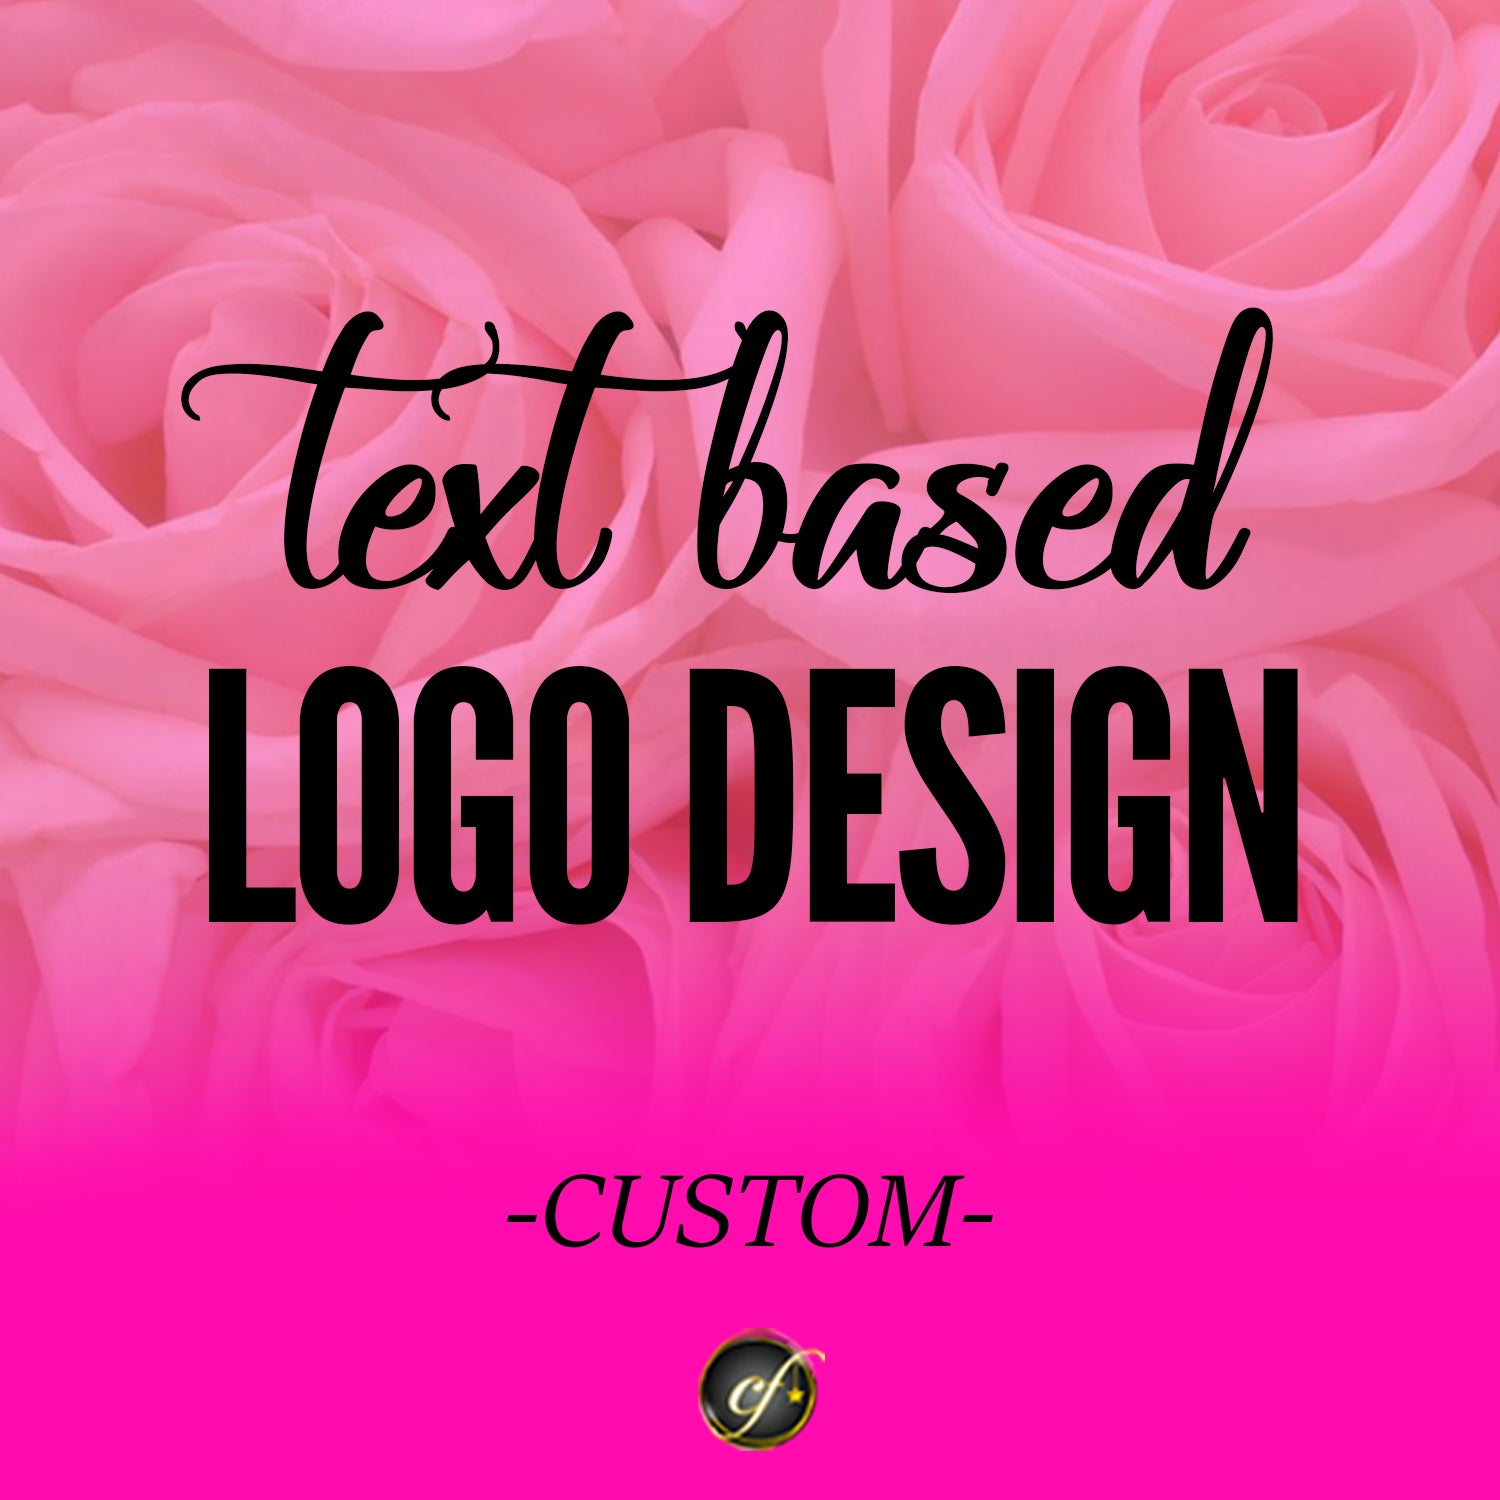 Logo Design (Text Based) Custom